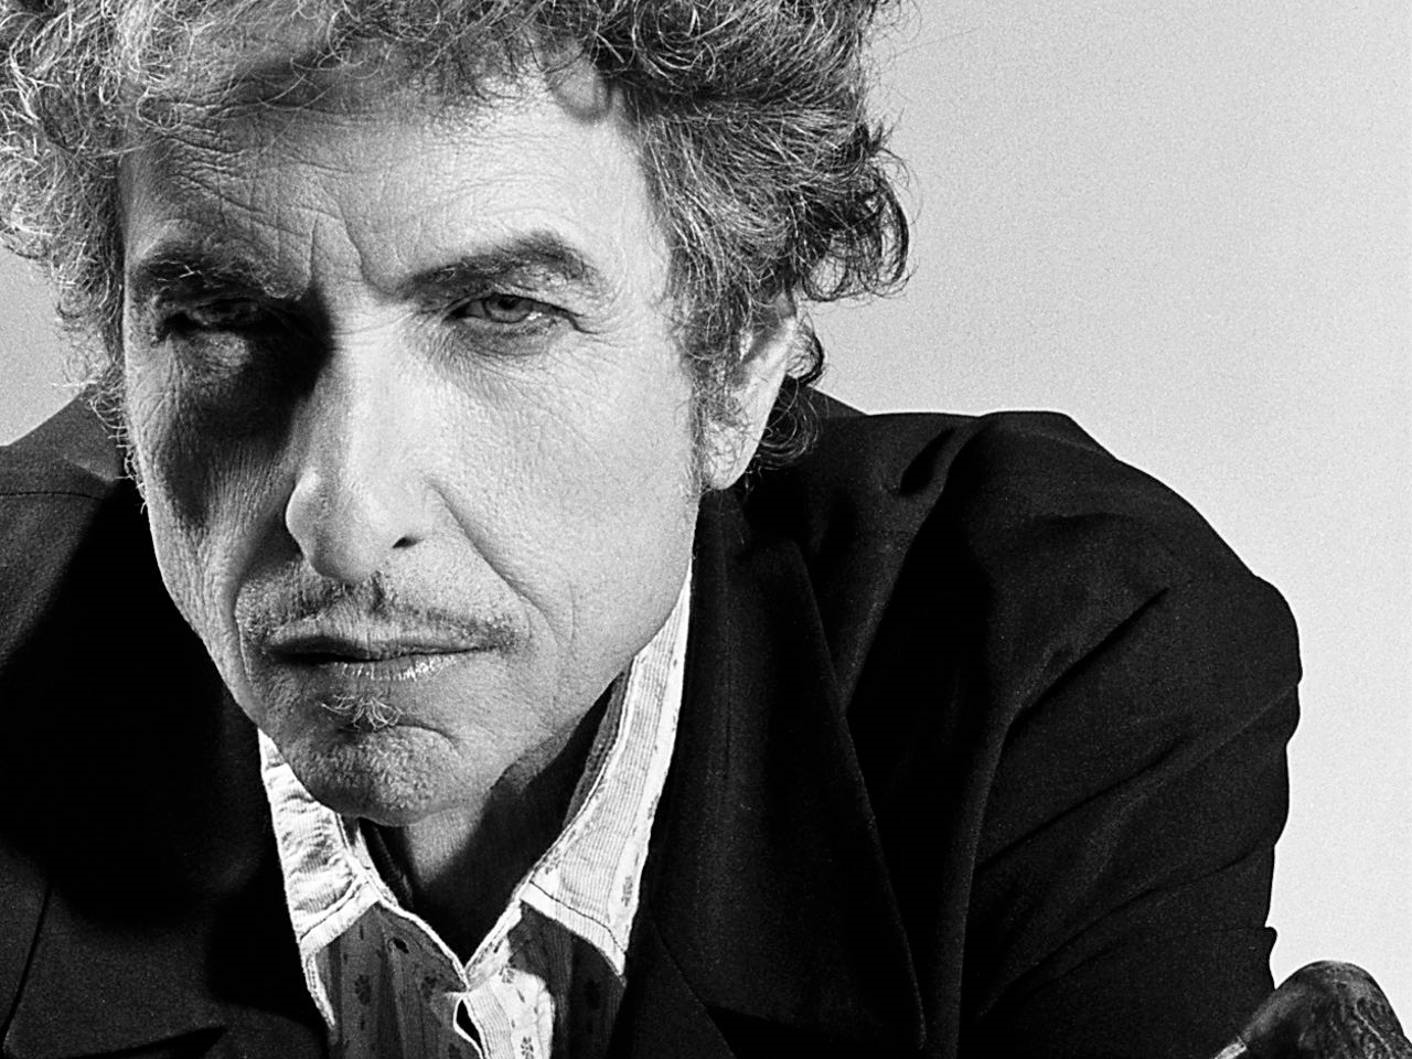 Bob Dylan actuará junto a su banda el 11 de julio en Donosti